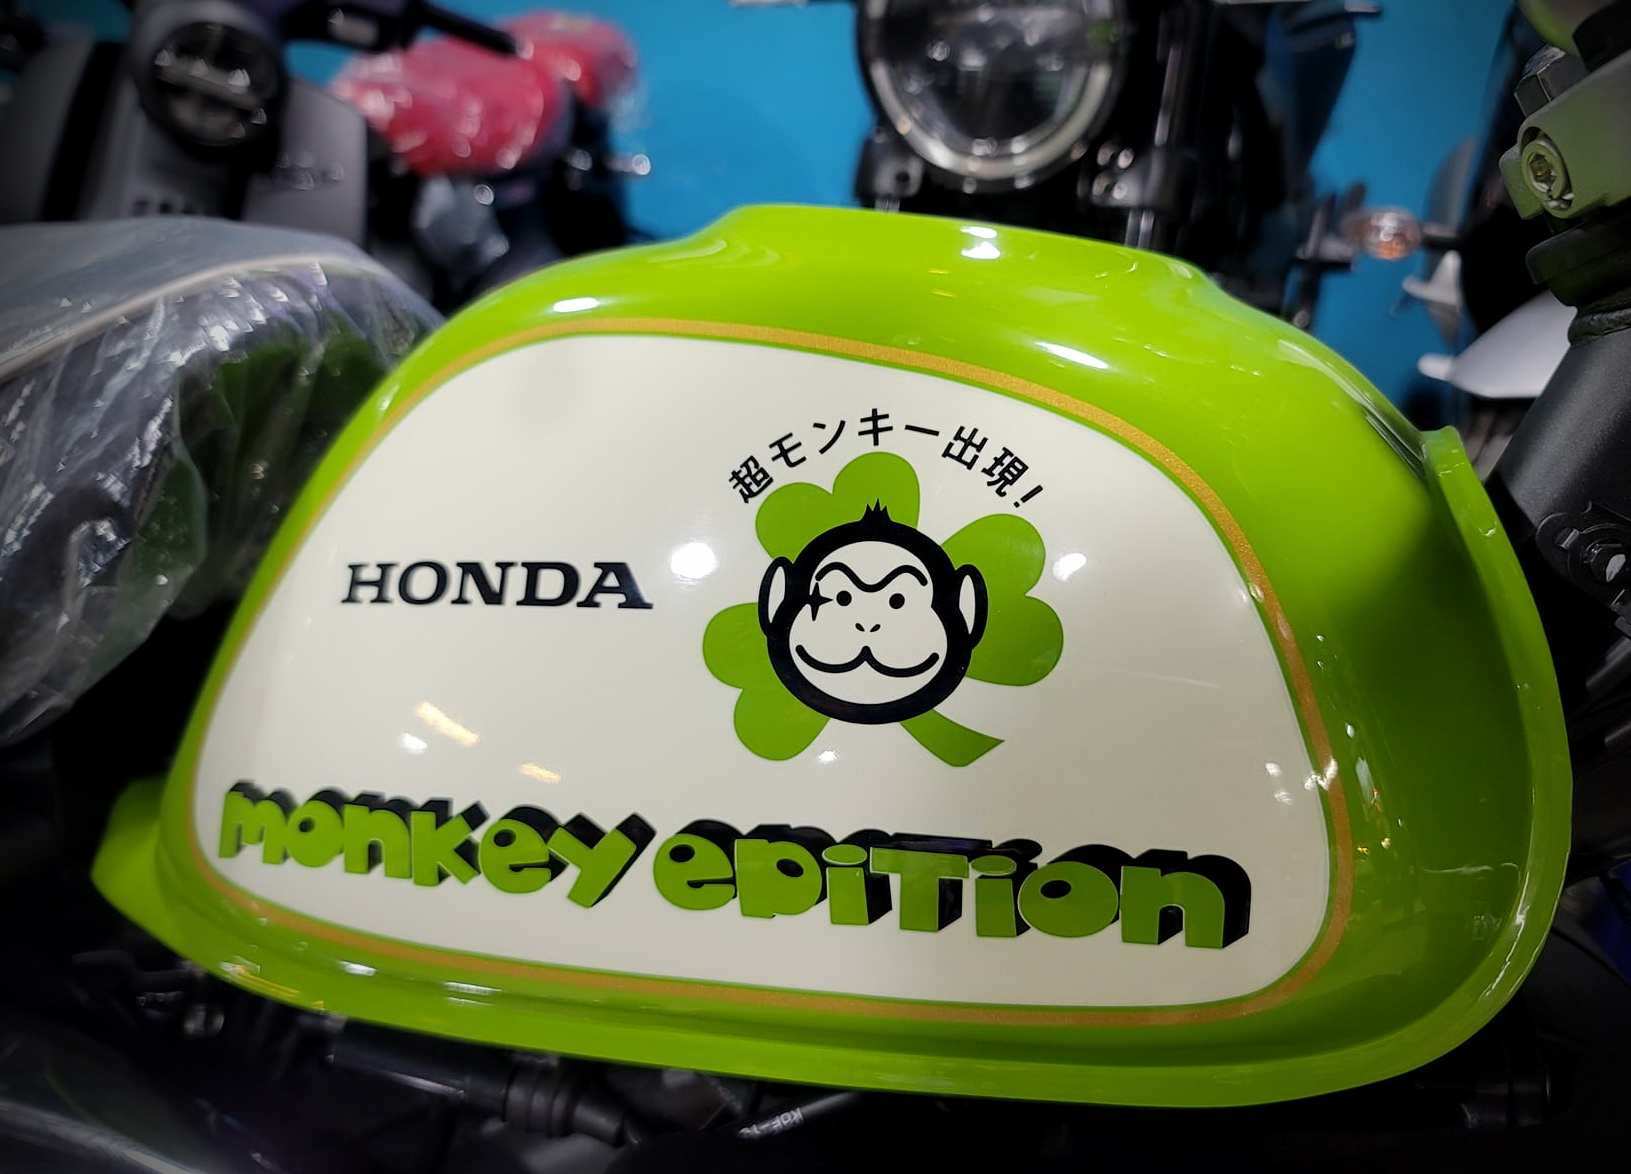 HONDA Monkey 125新車出售中 三葉草【勝大重機】全新車 五檔 HONDA MONKEY 125 三葉草 限量200台 售價$20.8萬 | 勝大重機